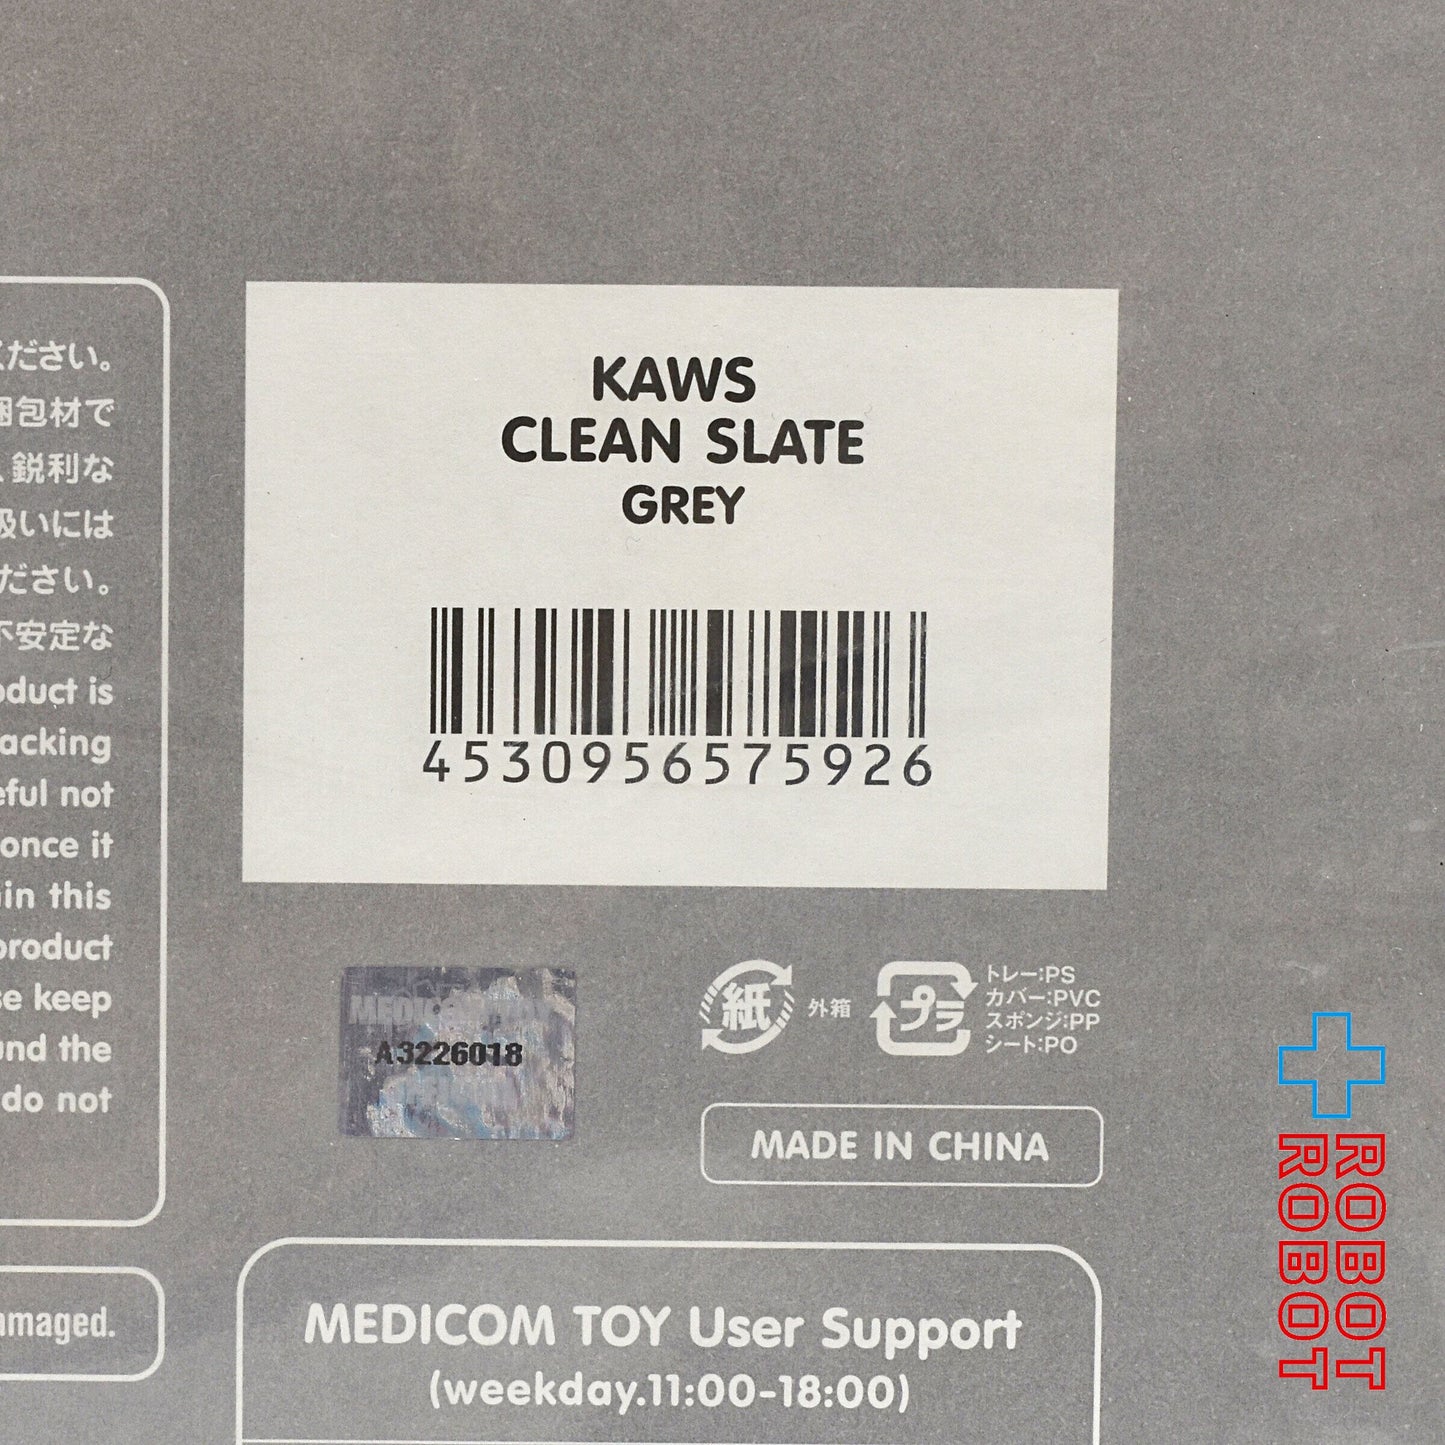 メディコム KAWS カウズ CLEAN SLATE グレイ オープンエディション ビニールフィギュア 未開封